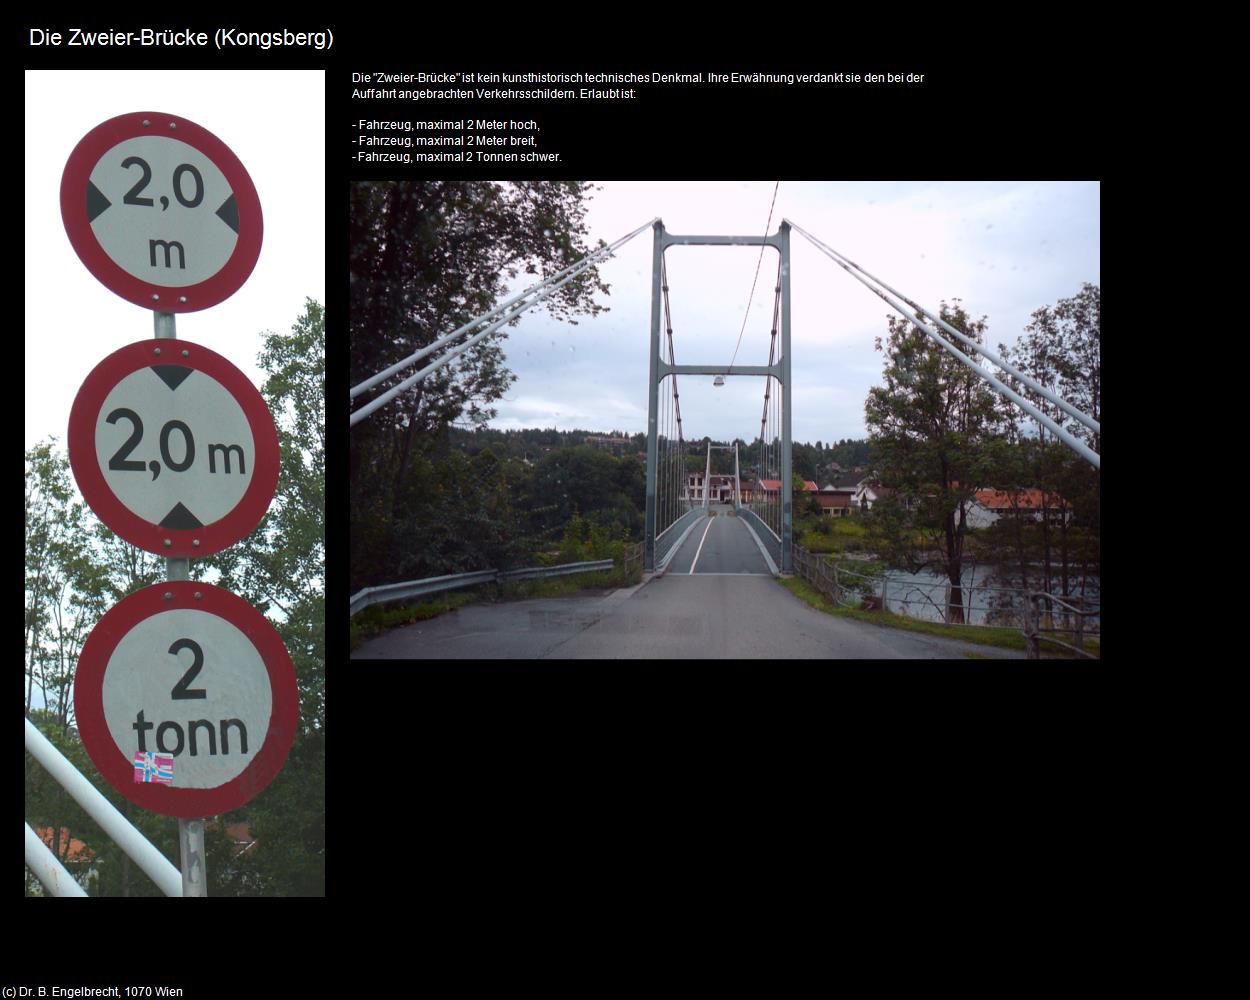 Die Zweier-Brücke (Kongsberg) in Kulturatlas-REISE nach NORWEGEN